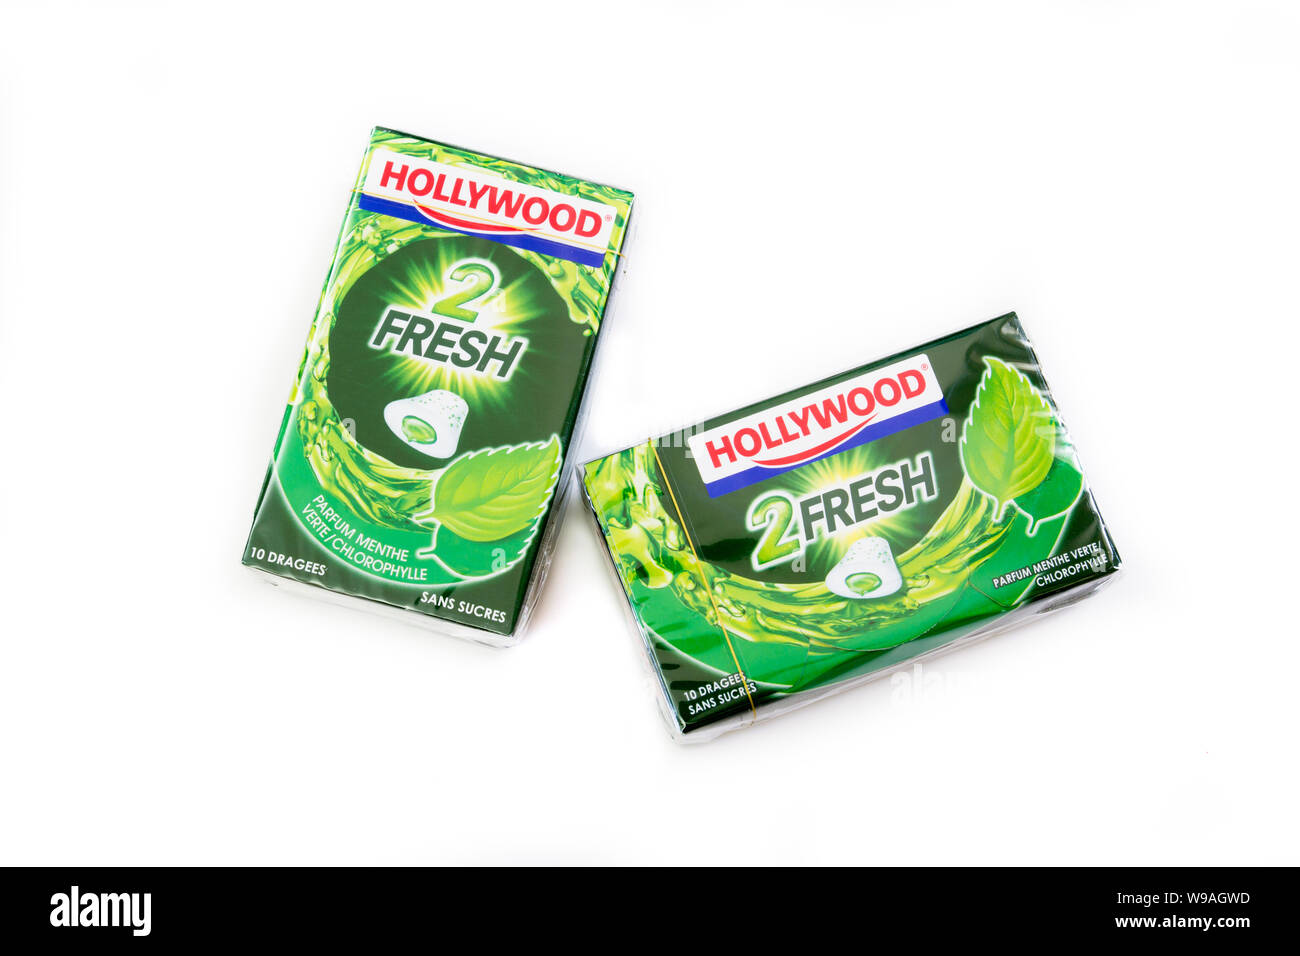 Hollywood chewing gum Green Fresh - Hollywood